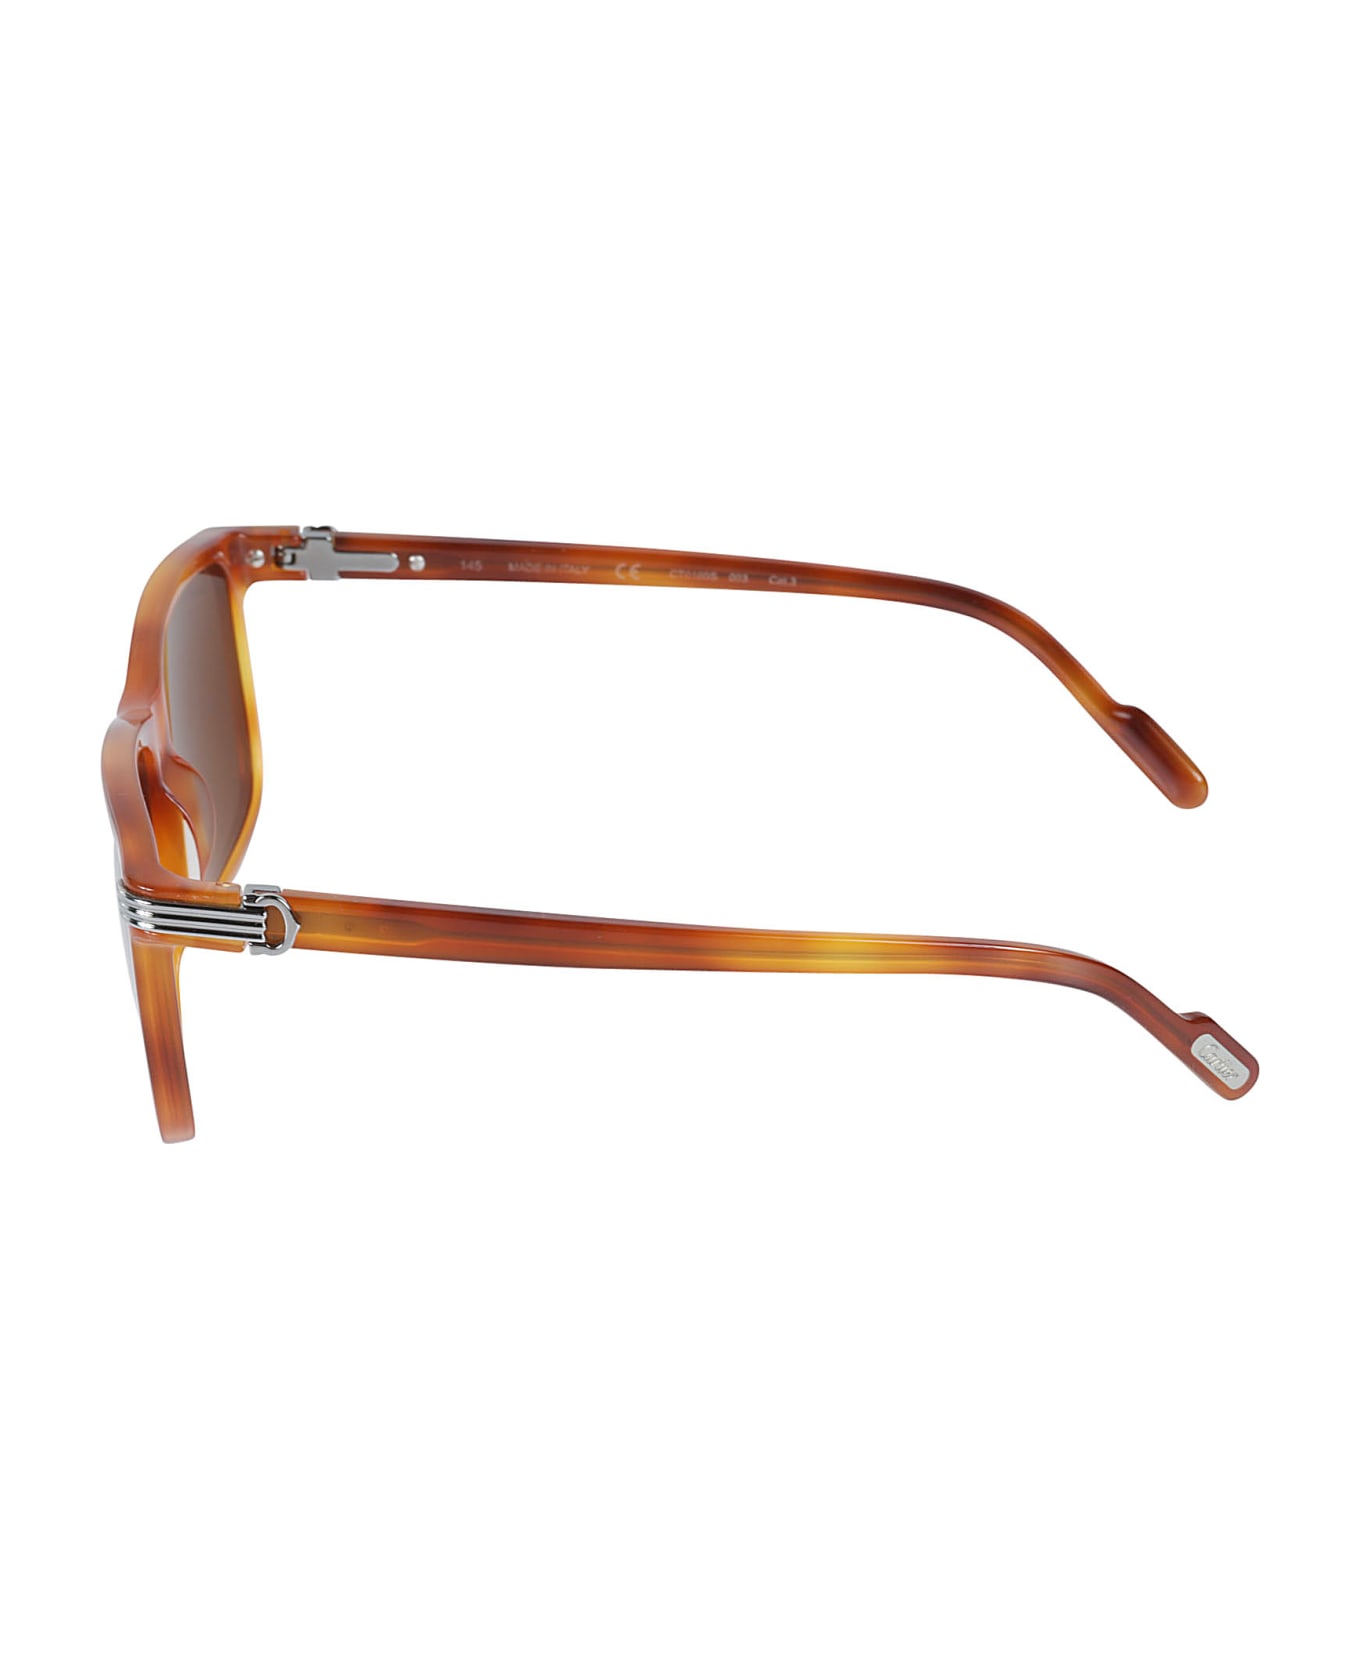 Cartier Eyewear Square Frame Sunglasses - 003 Sunglasses ALDO Albentariel 16174563 650